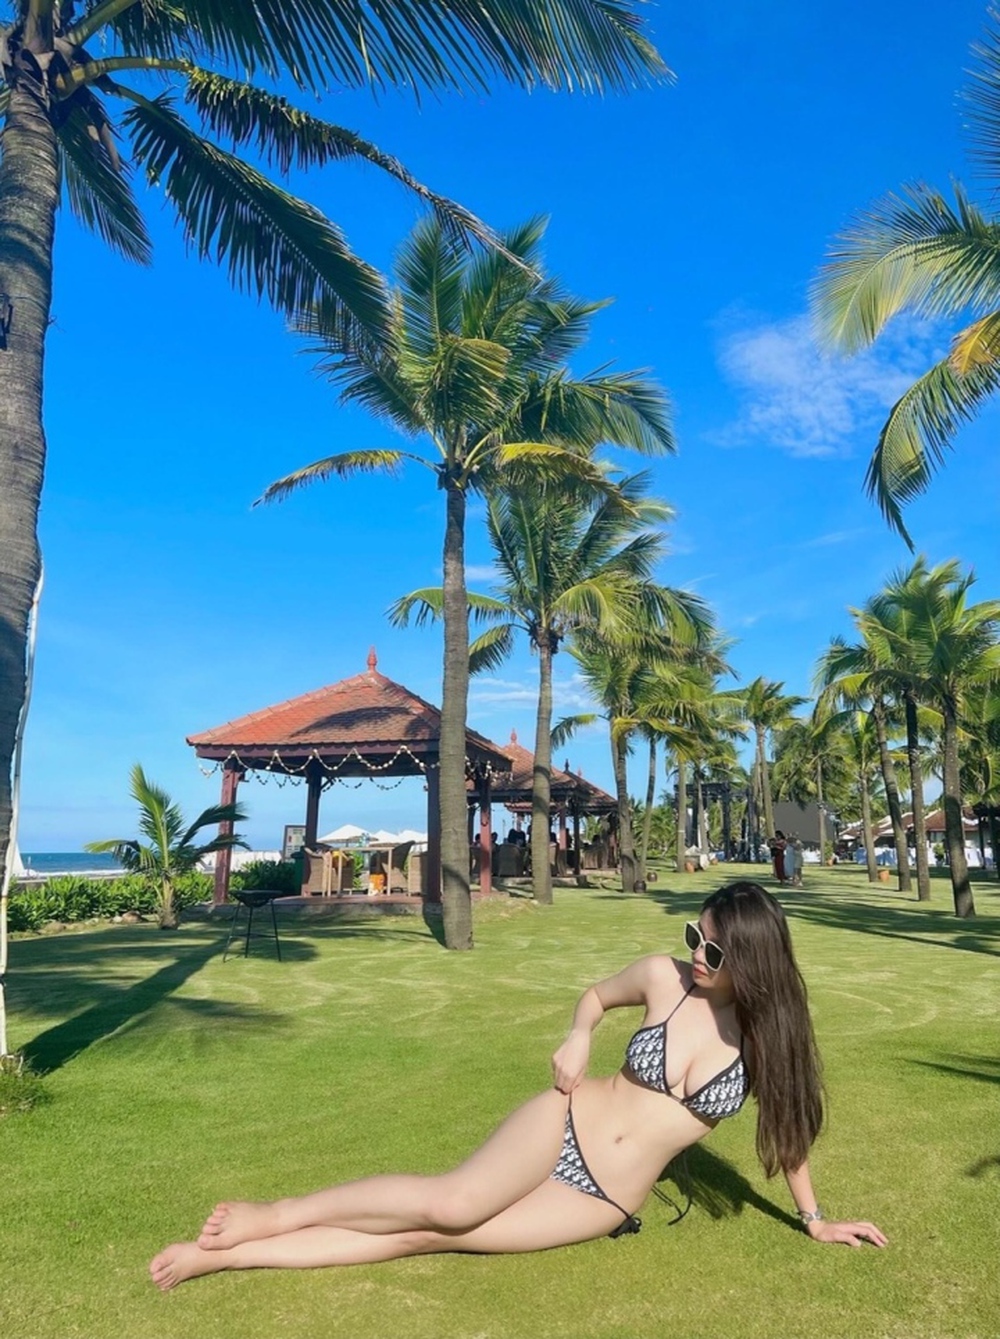 Nữ tuyển thủ Việt Nam tung ảnh bikini quyến rũ gây sốt mạng xã hội - Ảnh 3.